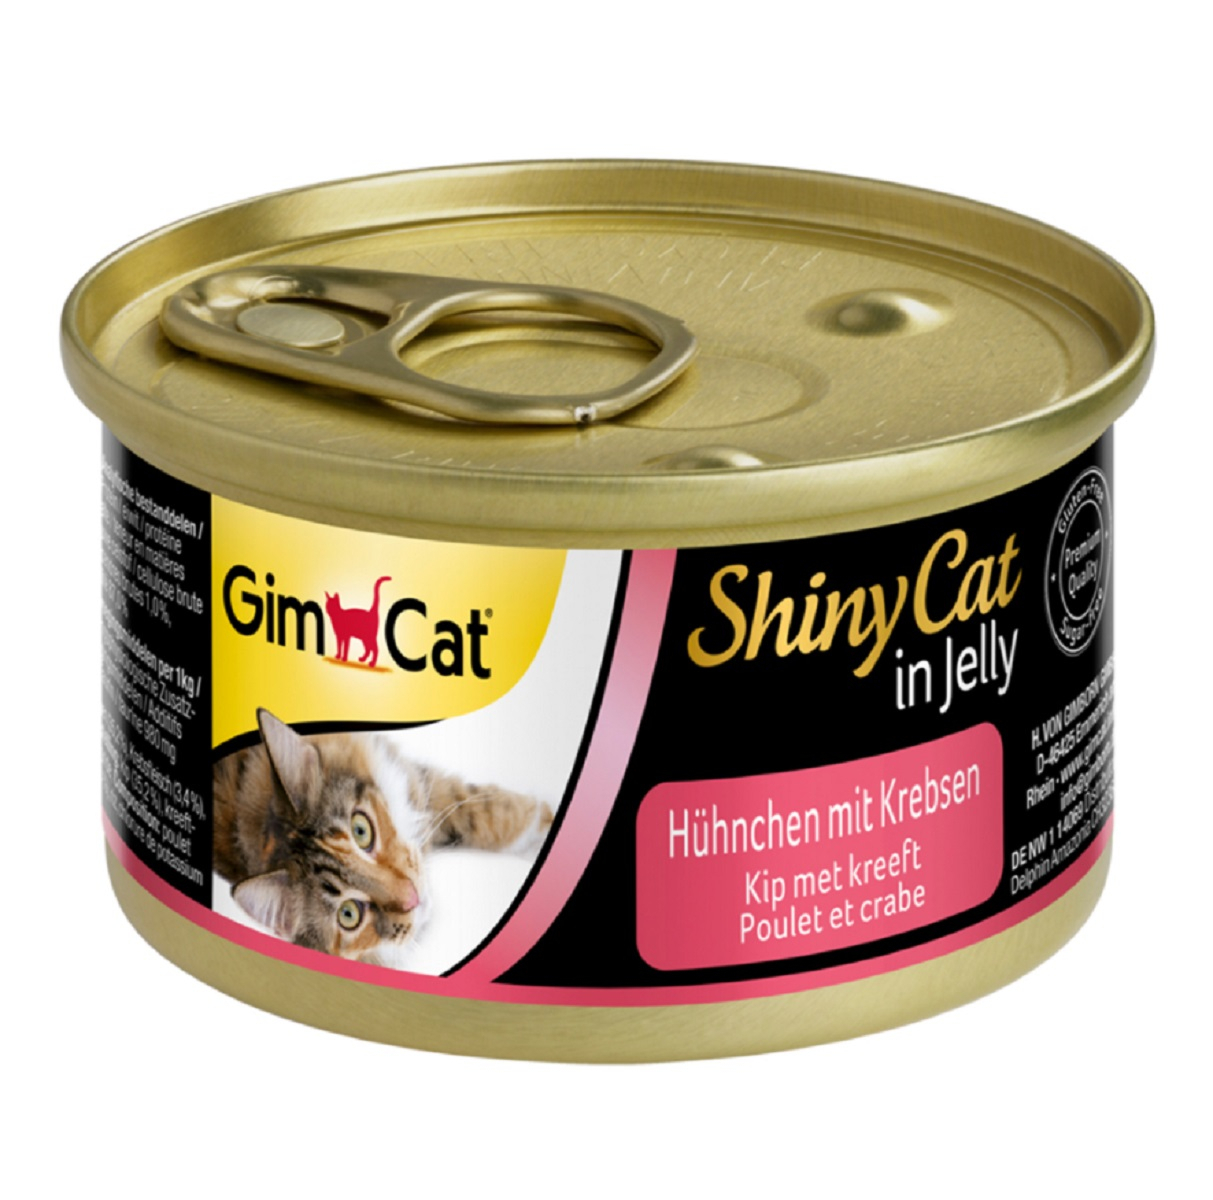 GimCat ShinyCat in Jelly Hühnchen mit Krebsen für Katzen